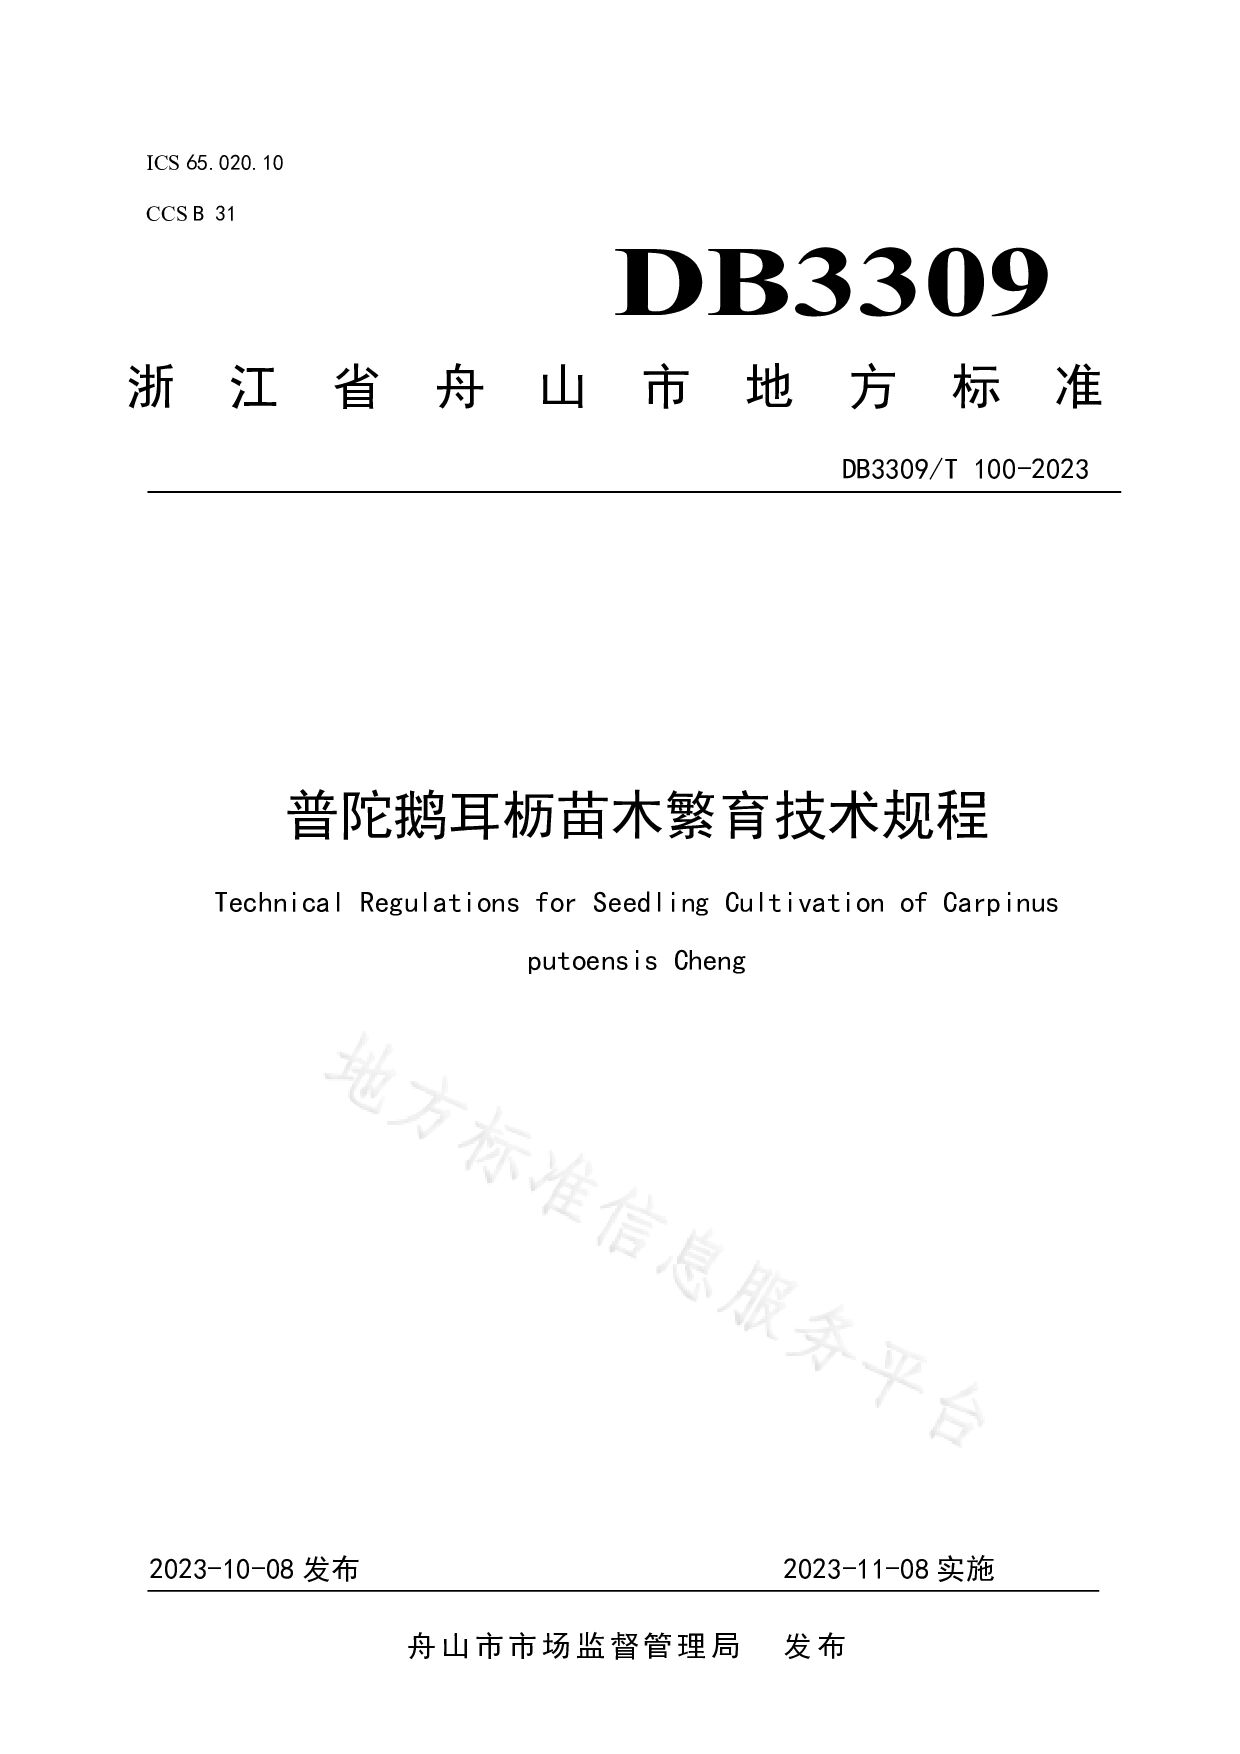 DB3309/T 100-2023封面图